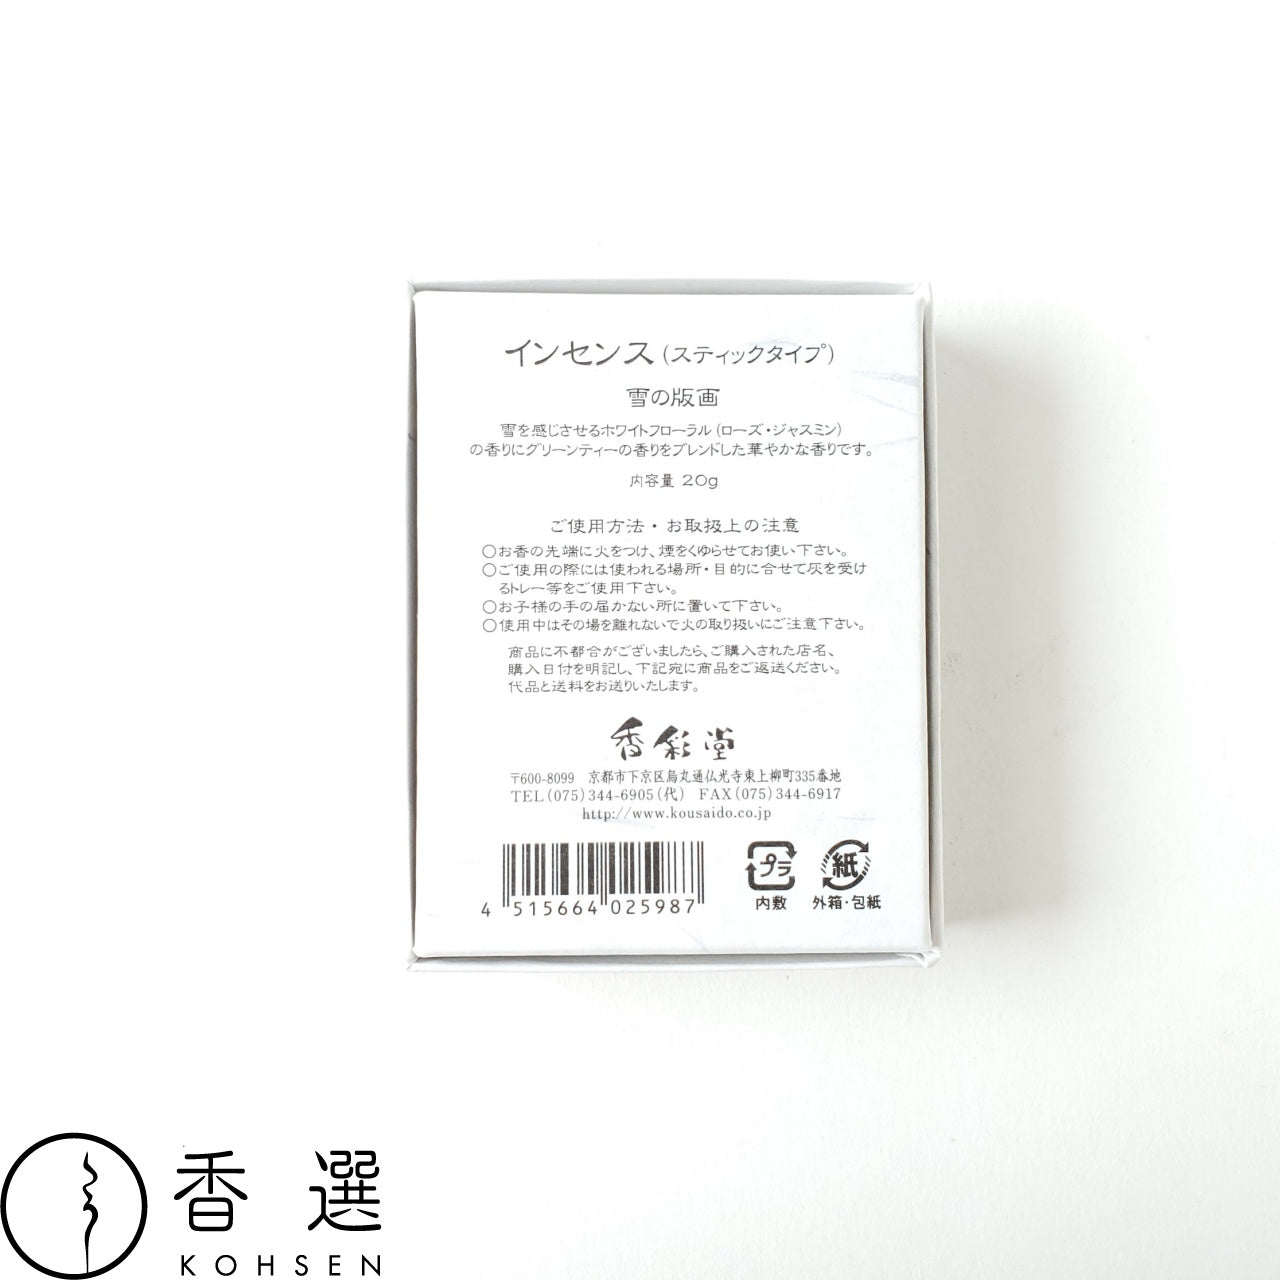 香彩堂 HANGA インセンス 雪の版画 雪 YUKI お香 スティック型